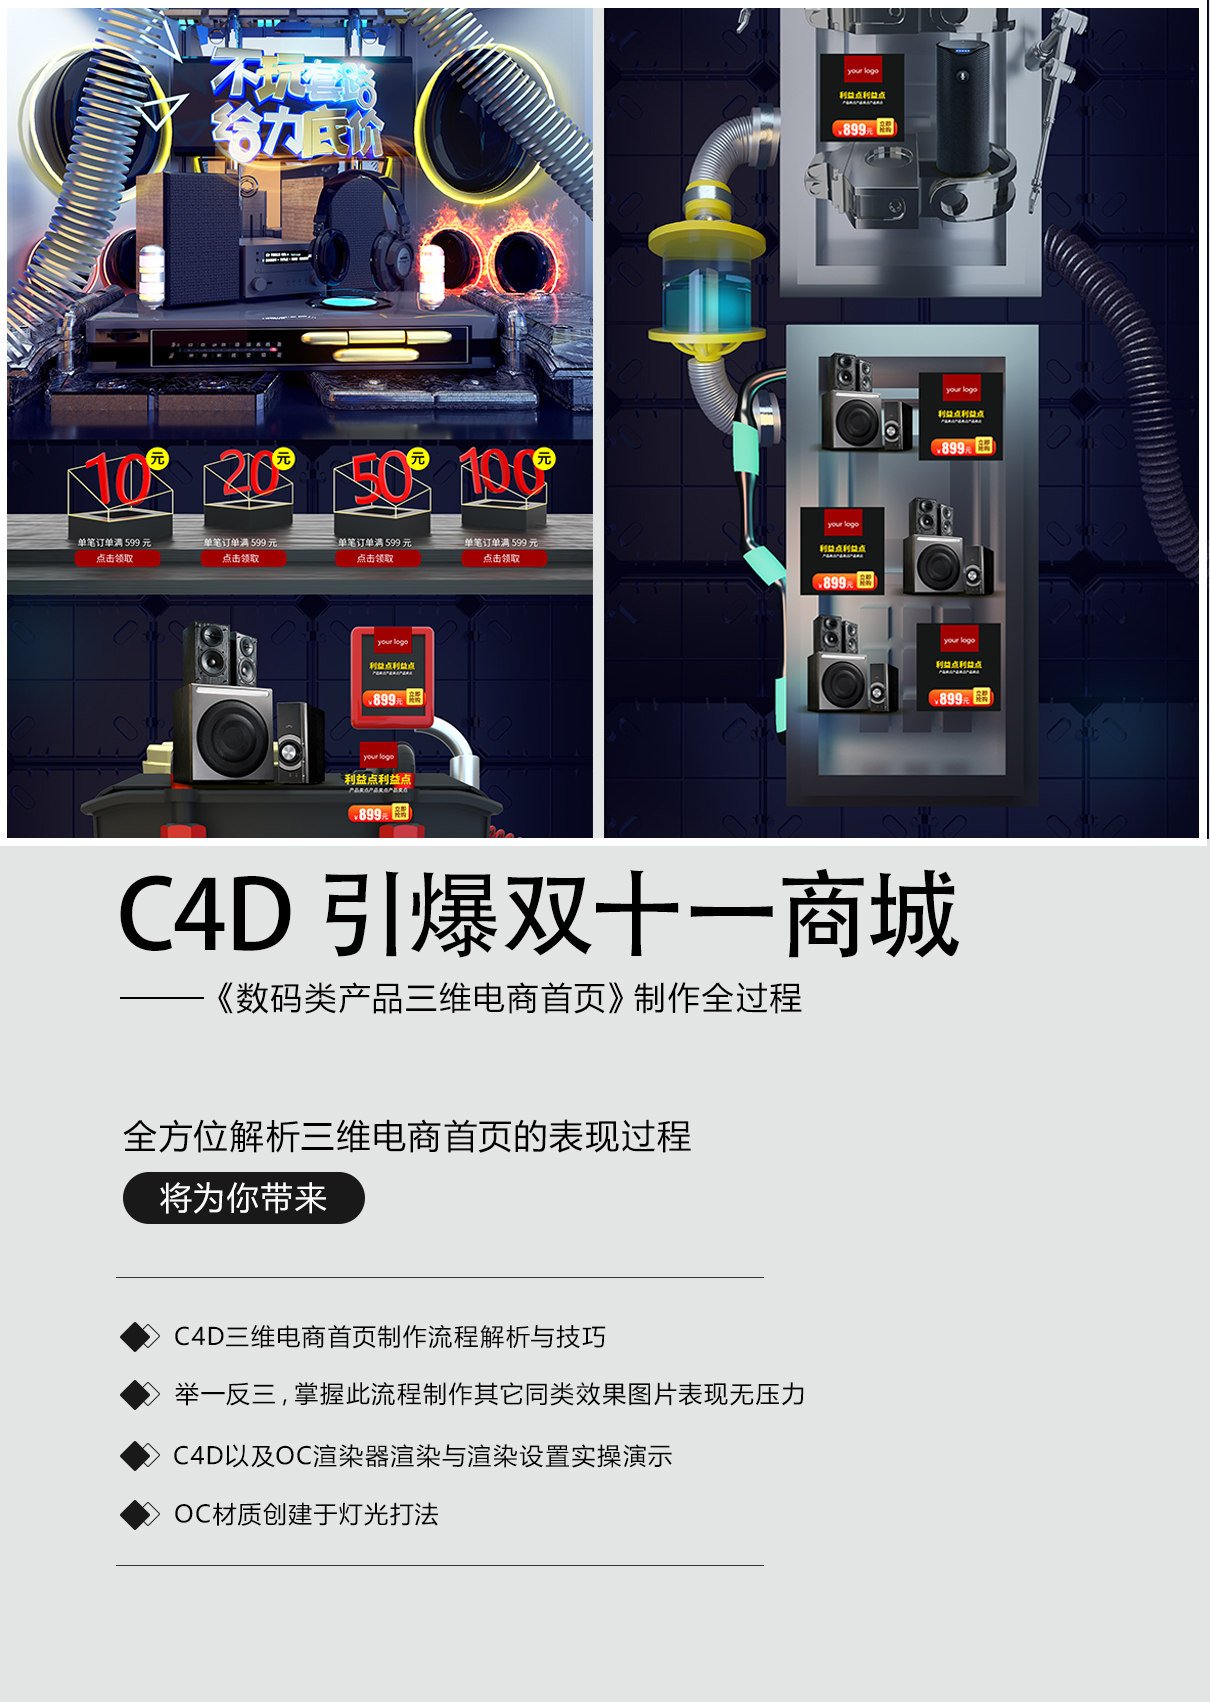 C4D产品首页设计